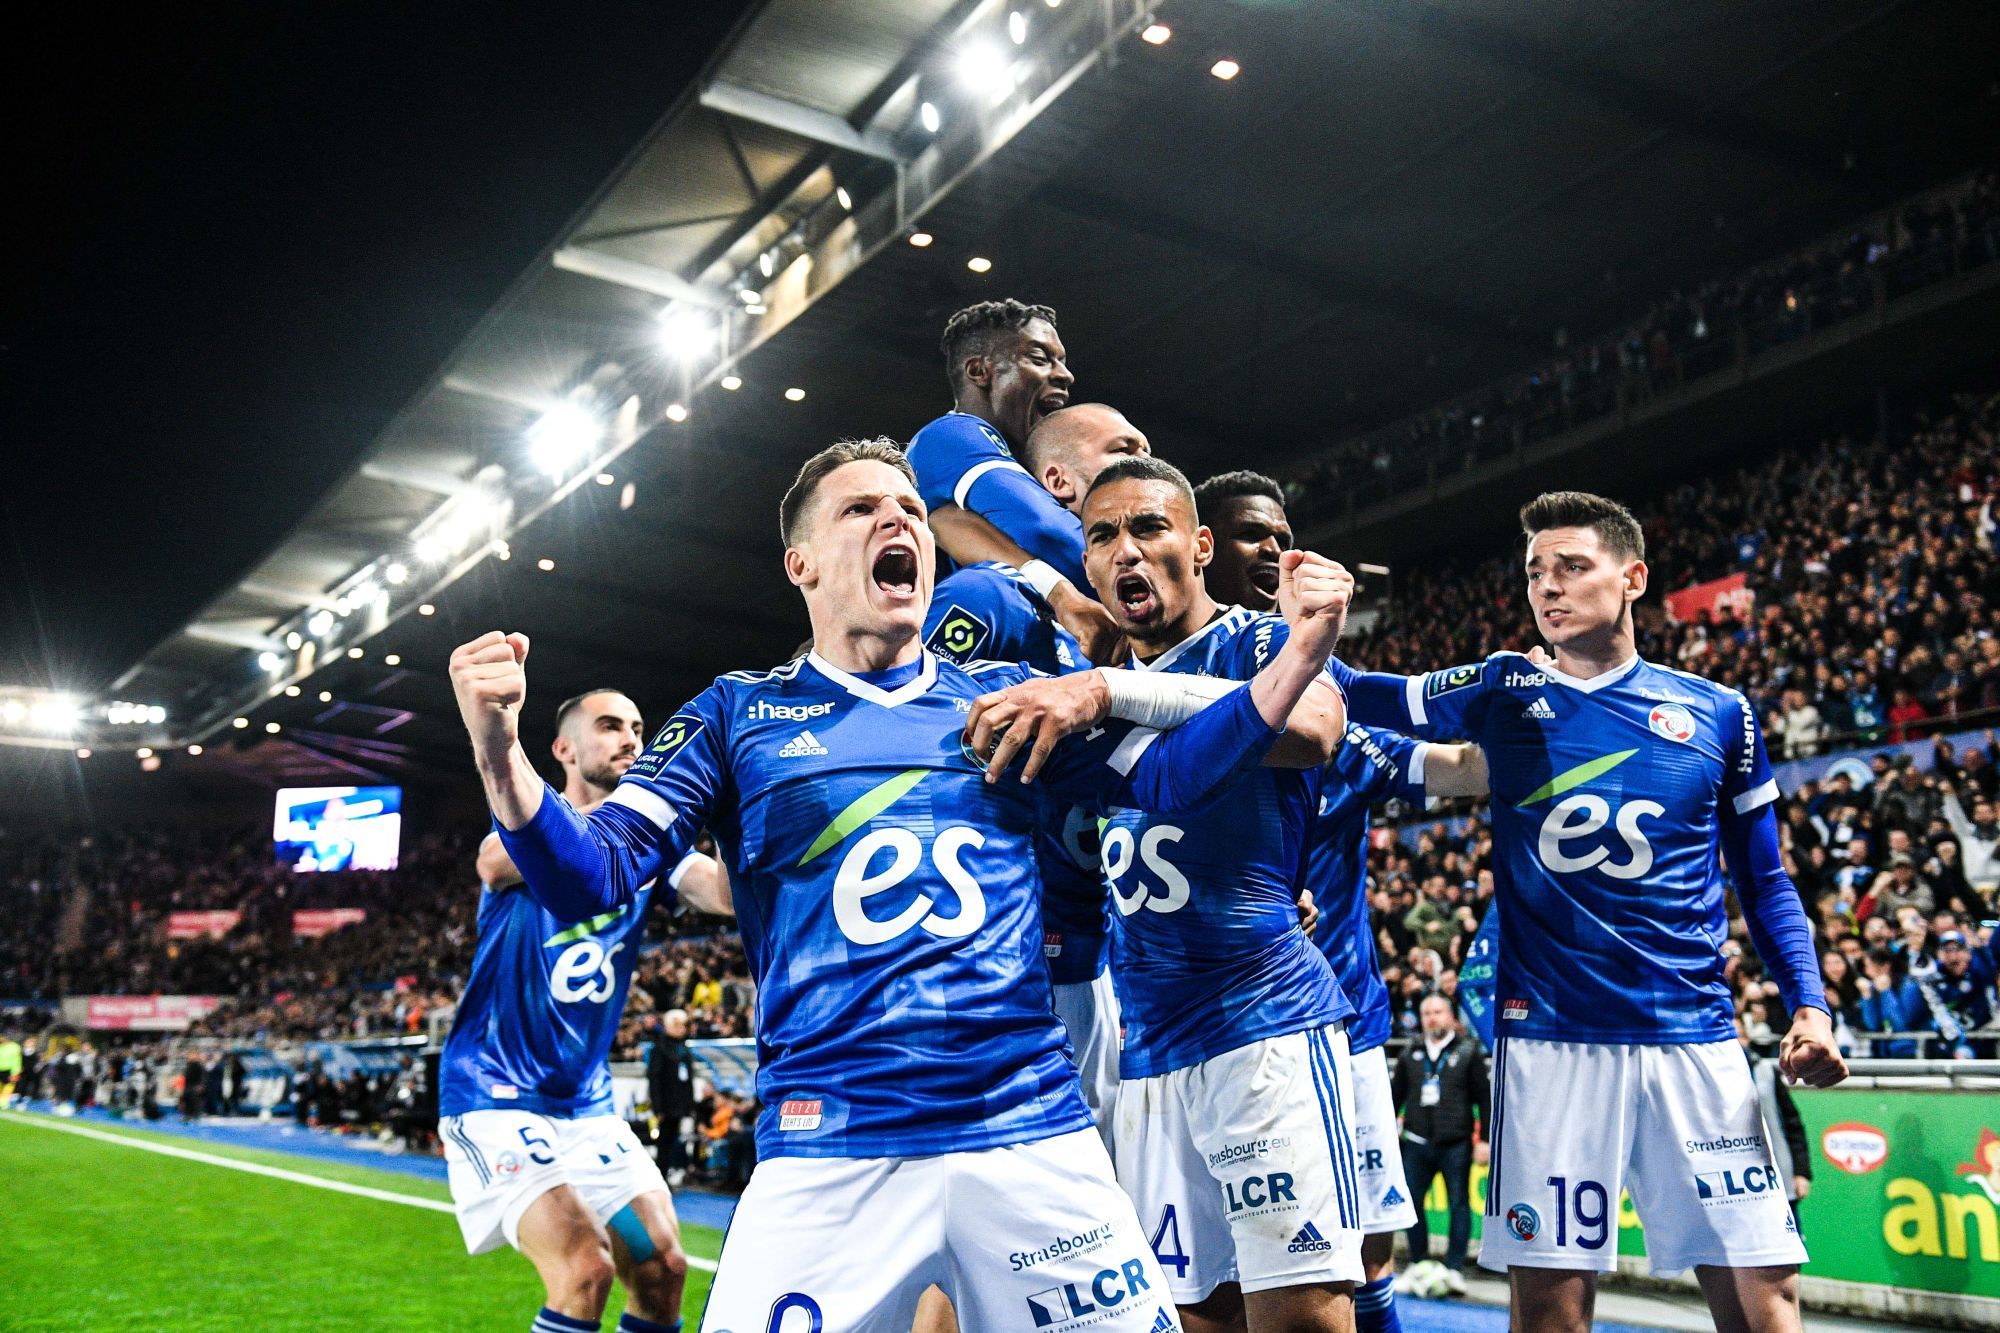 RC Strasbourg can count on Kévin Gameiro next season – Sport.fr -  Archyworldys